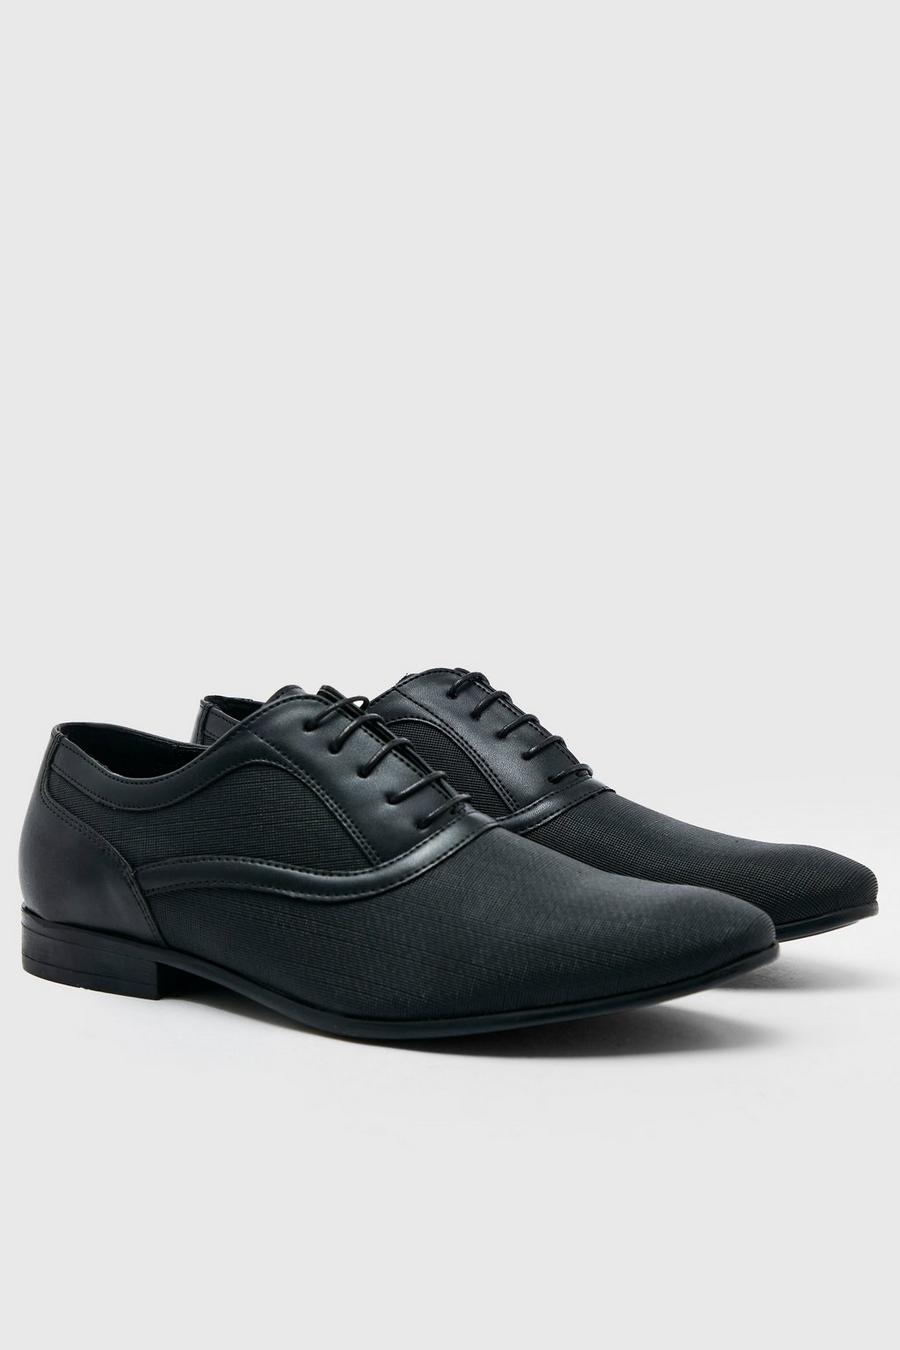 Zapatos Oxford de cuero calado con patrón, Black